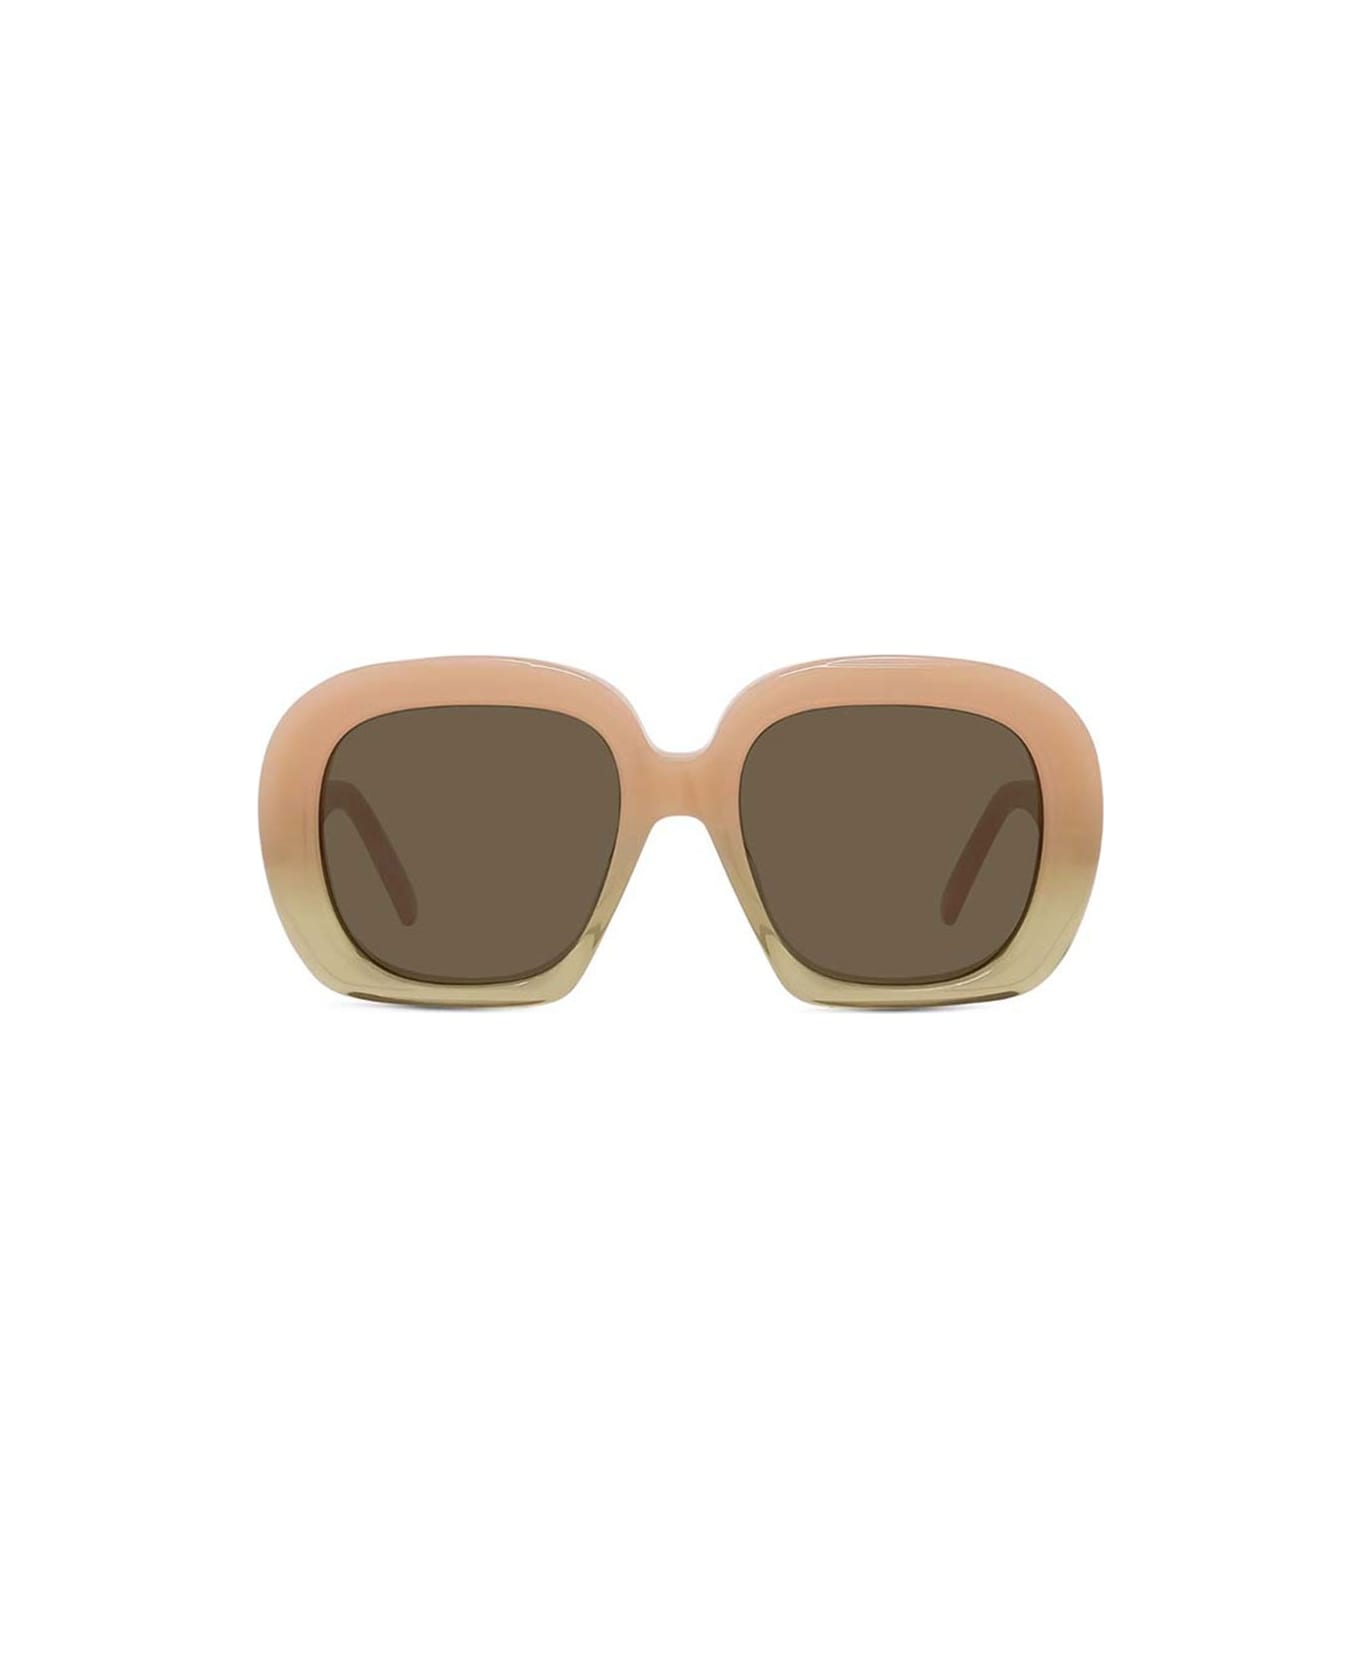 Loewe Sunglasses - Rosa chiaro/Marrone